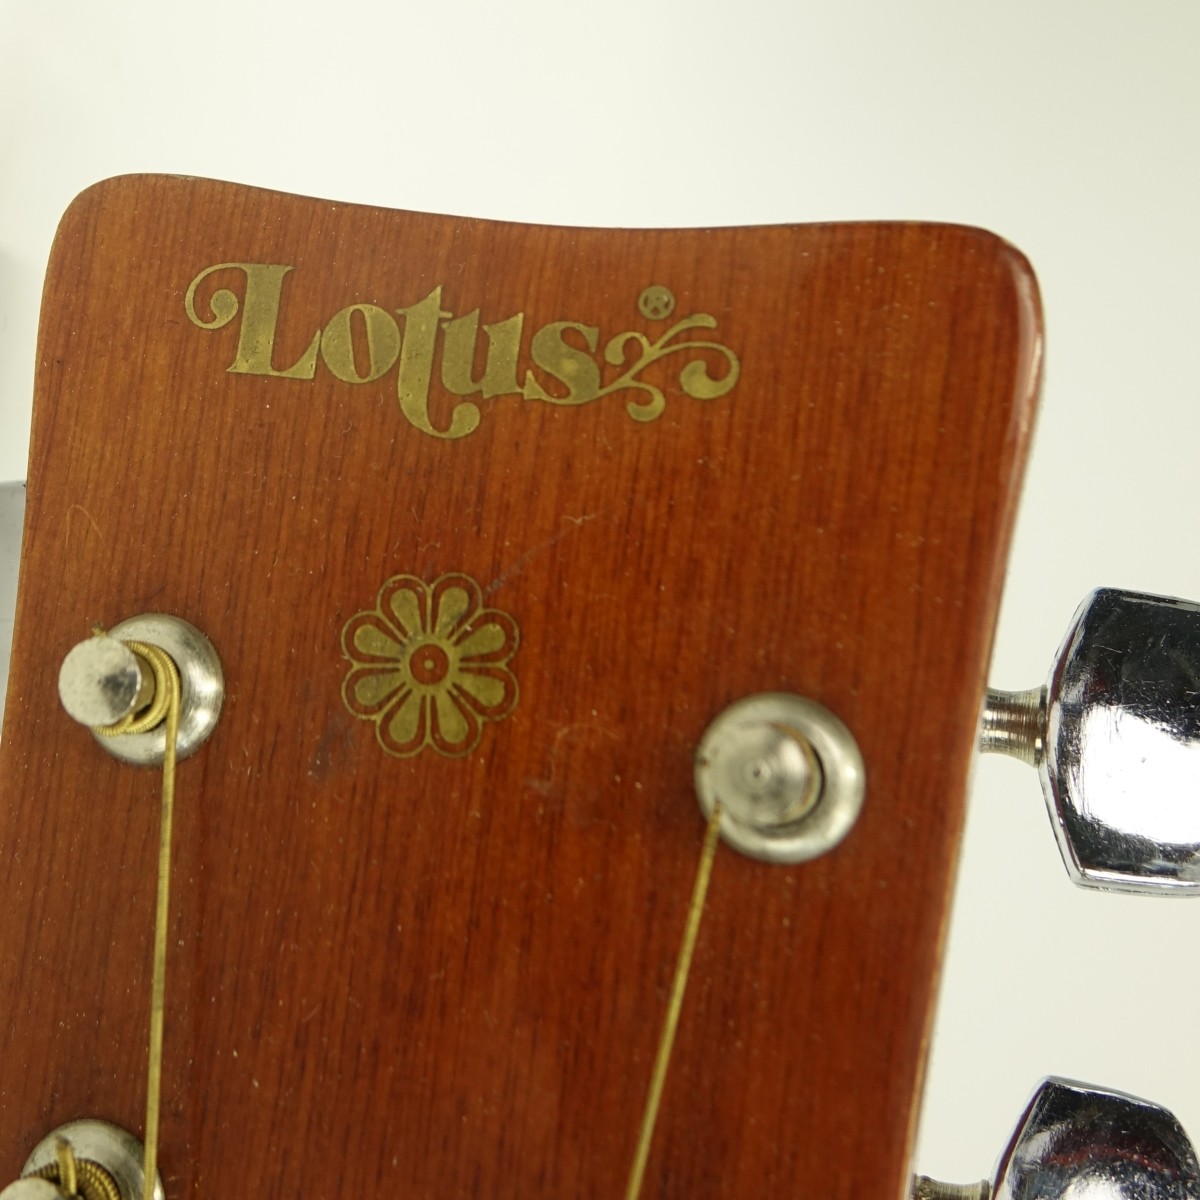 Vintage Lotus Model L-20 Acoustic Guitar w/ Case